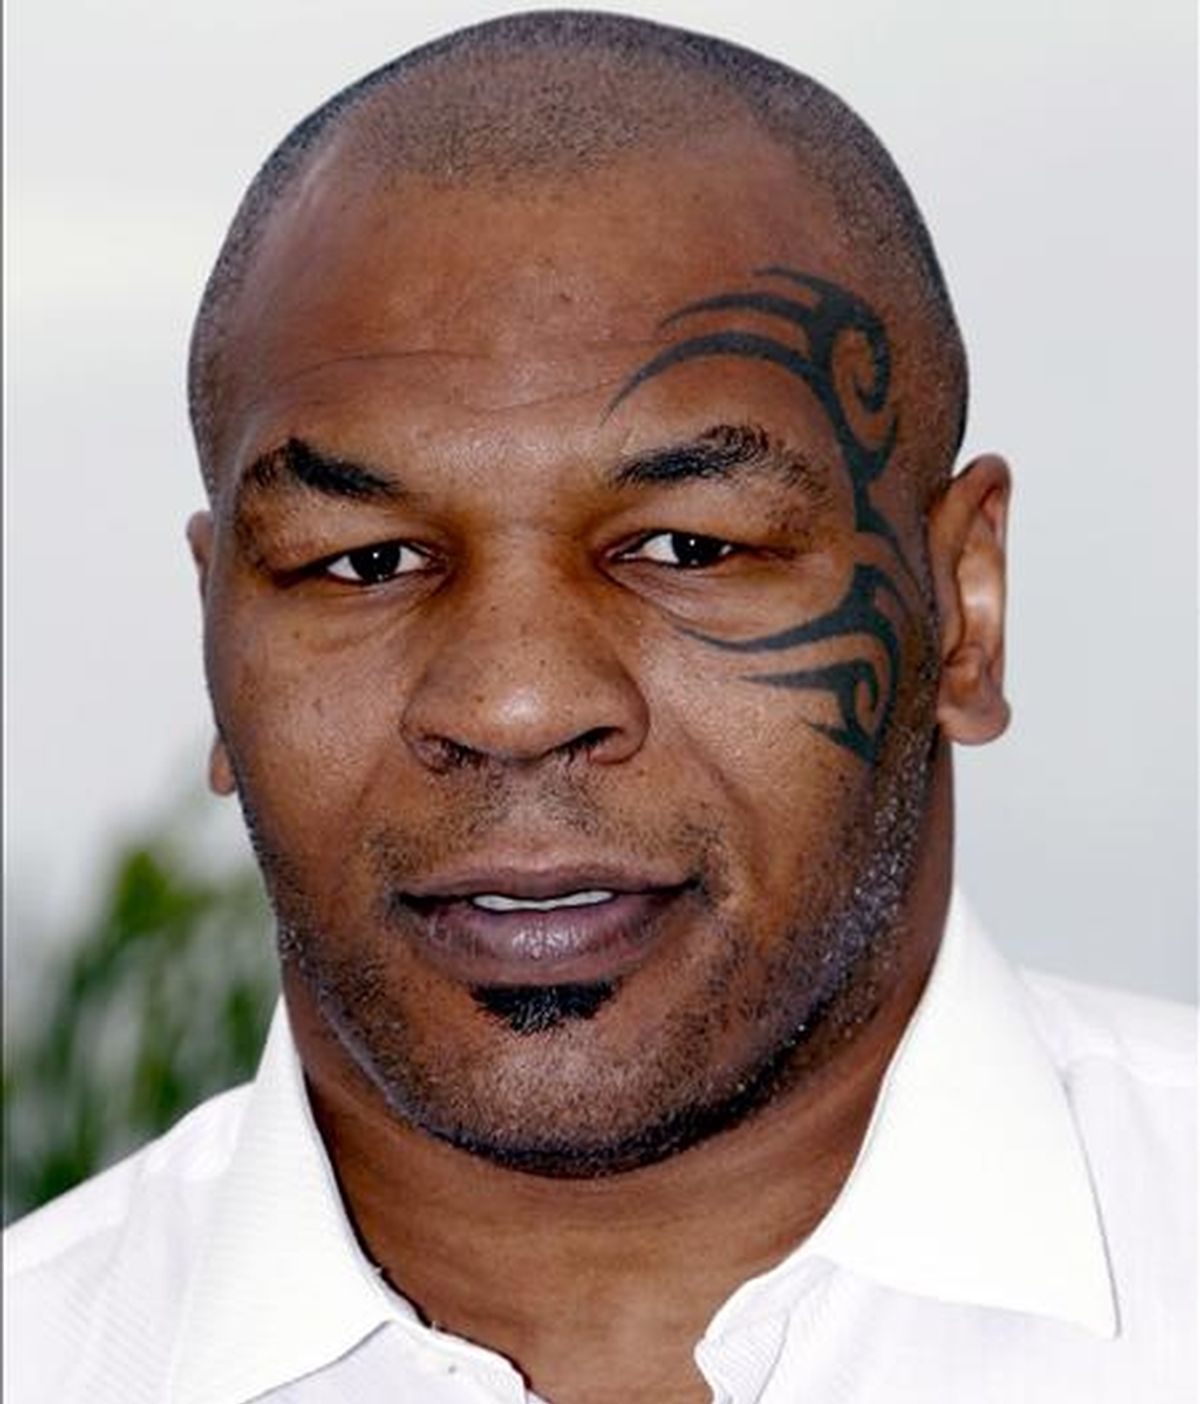 El ex boxeador estadounidense Mike Tyson ganó fama desde muy joven por su velocidad y poderío físico, además por sus líos amorosos y altercados fuera del cuadrilátero. EFE/Archivo